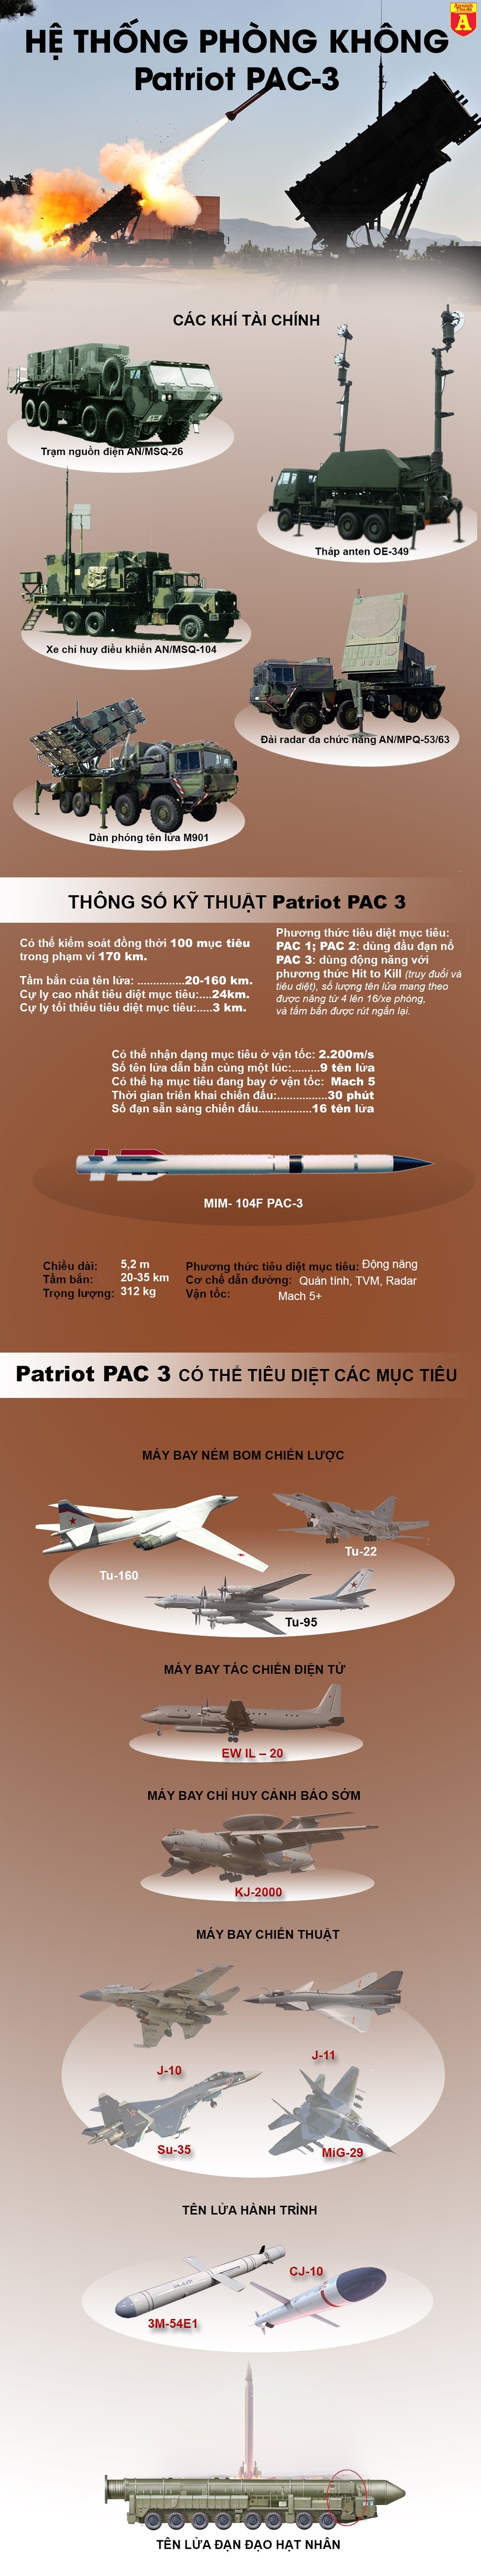 [Info] "Chớp lửa" Patriot Mỹ không hấp dẫn bằng "Rồng lửa" S-400 ảnh 2